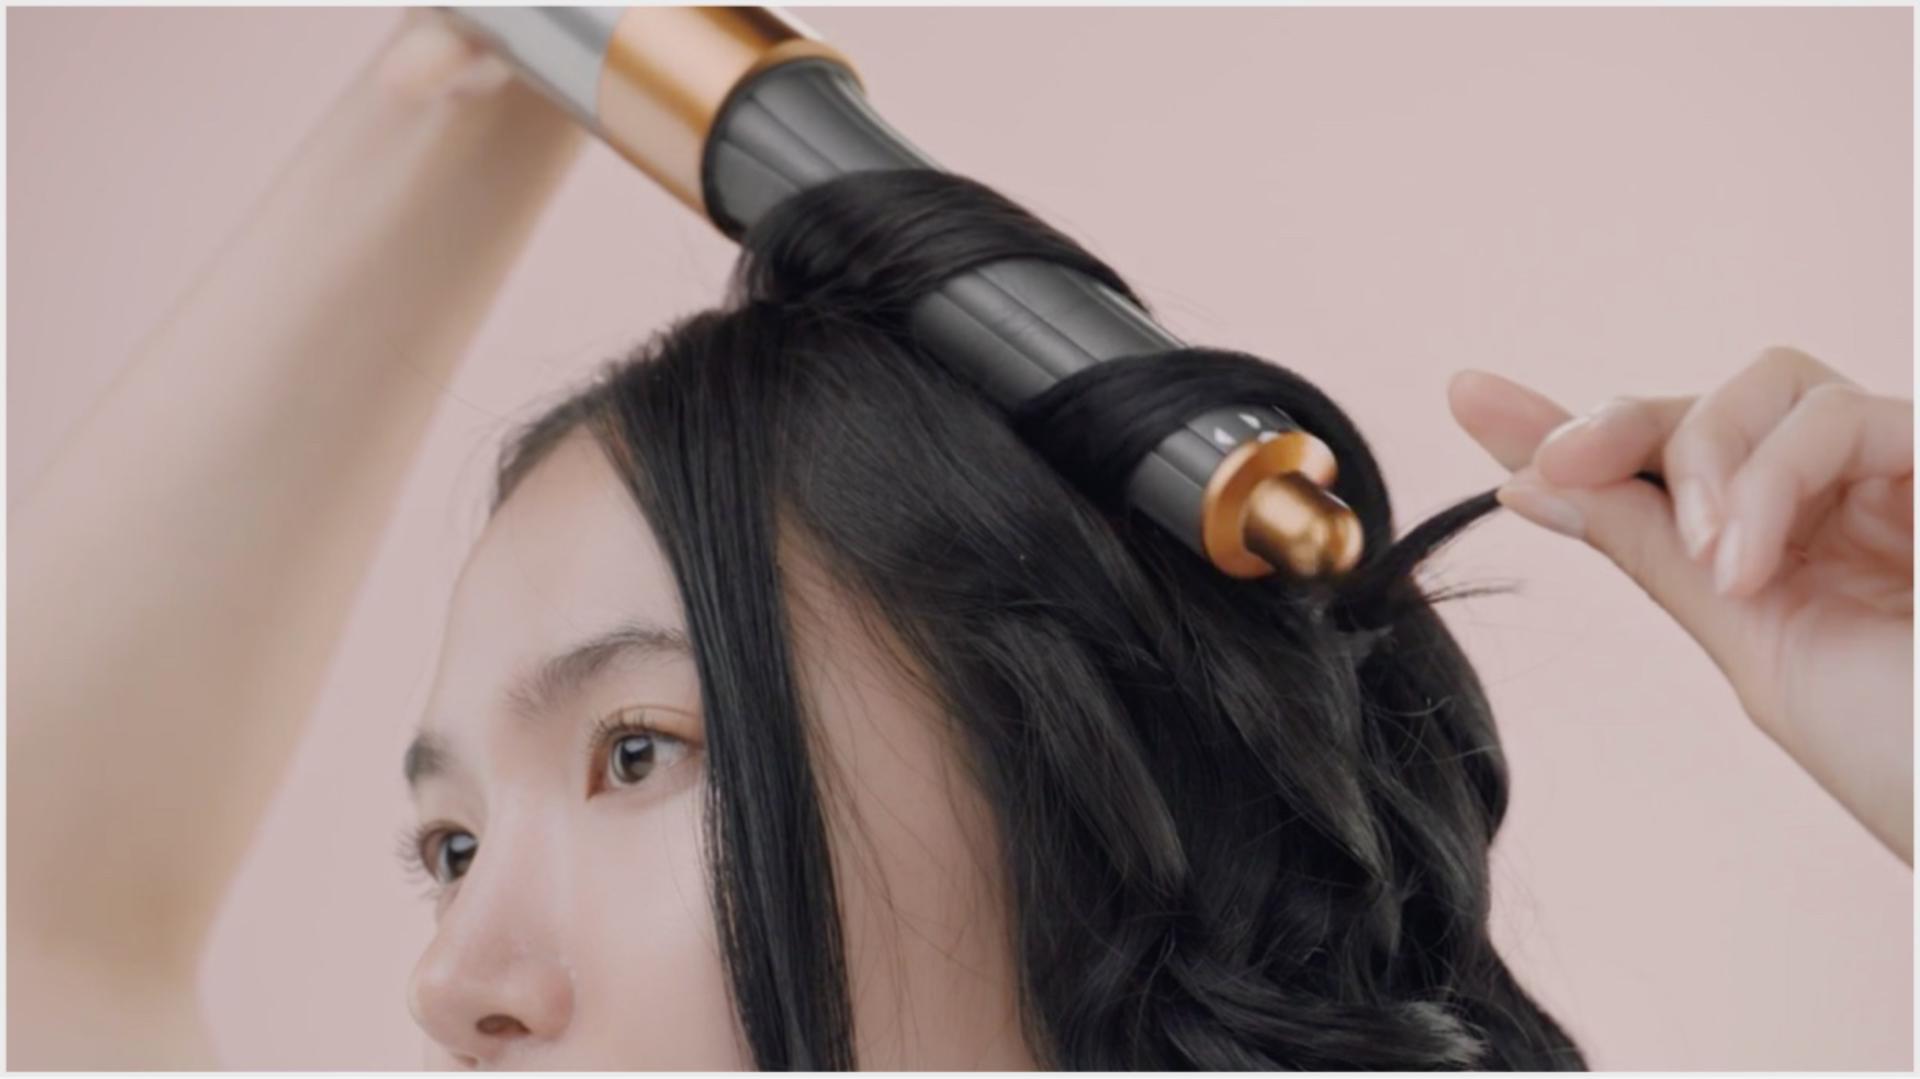 سيدة تُصفّف شعرها باستخدام تكنولوجيا دايسون للعناية بالشعر.